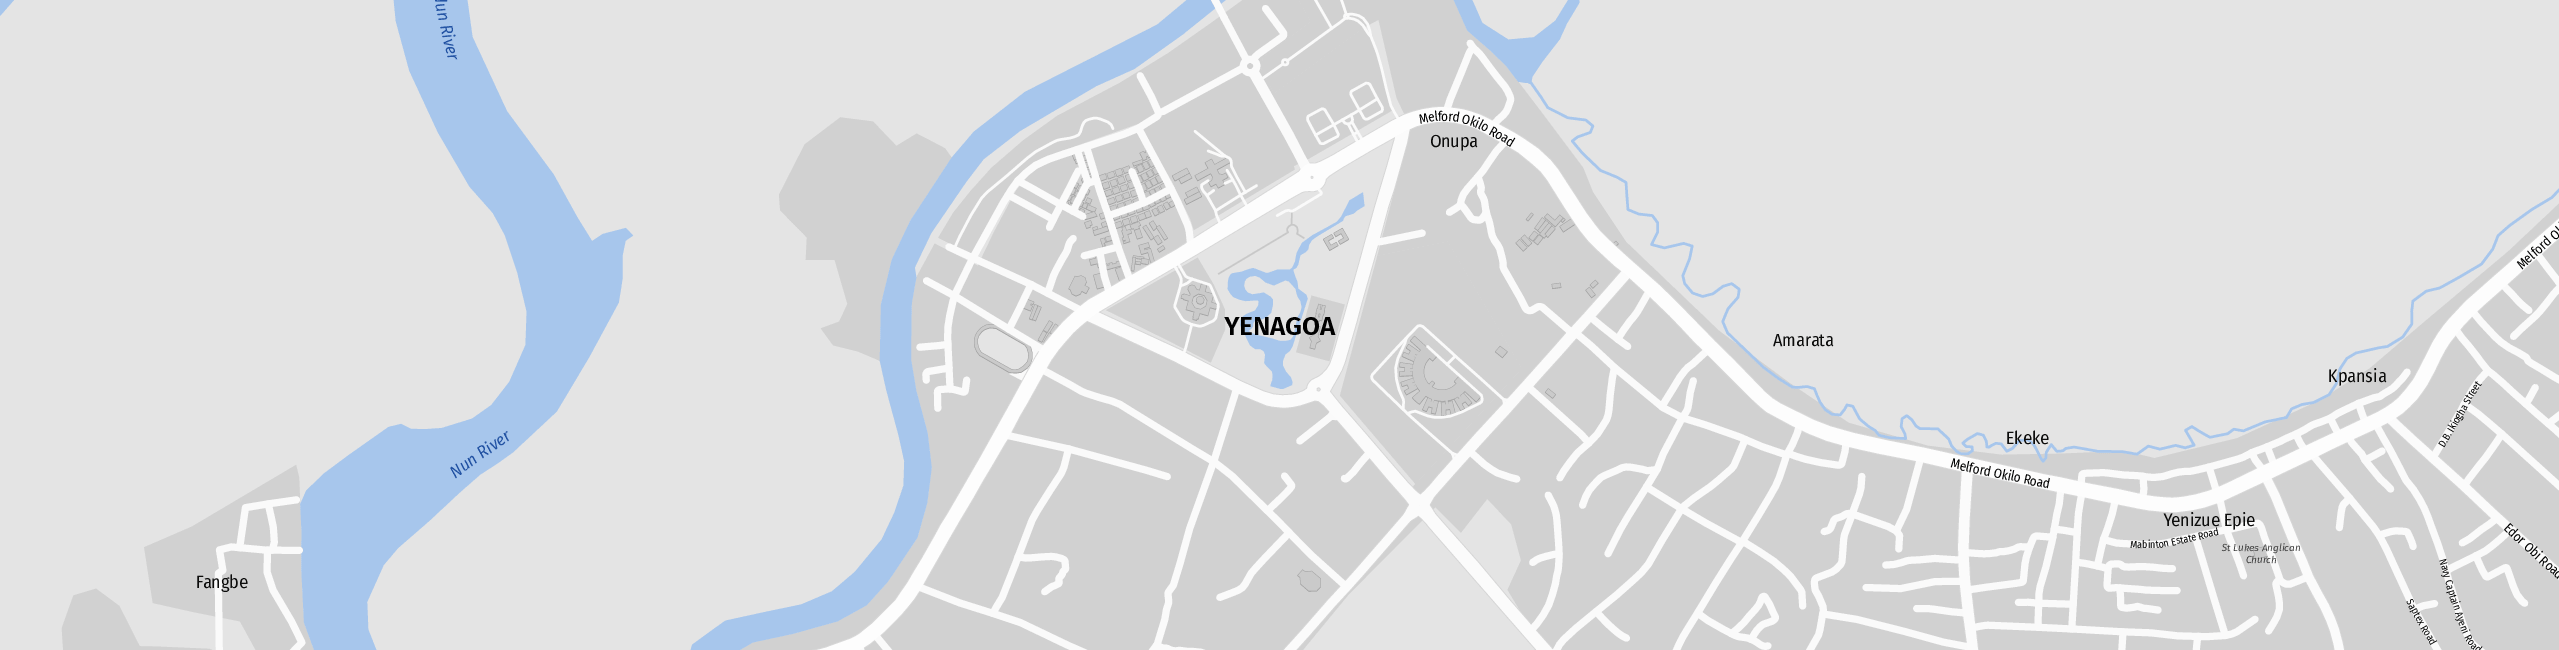 Stadtplan Yenagoa zum Downloaden.